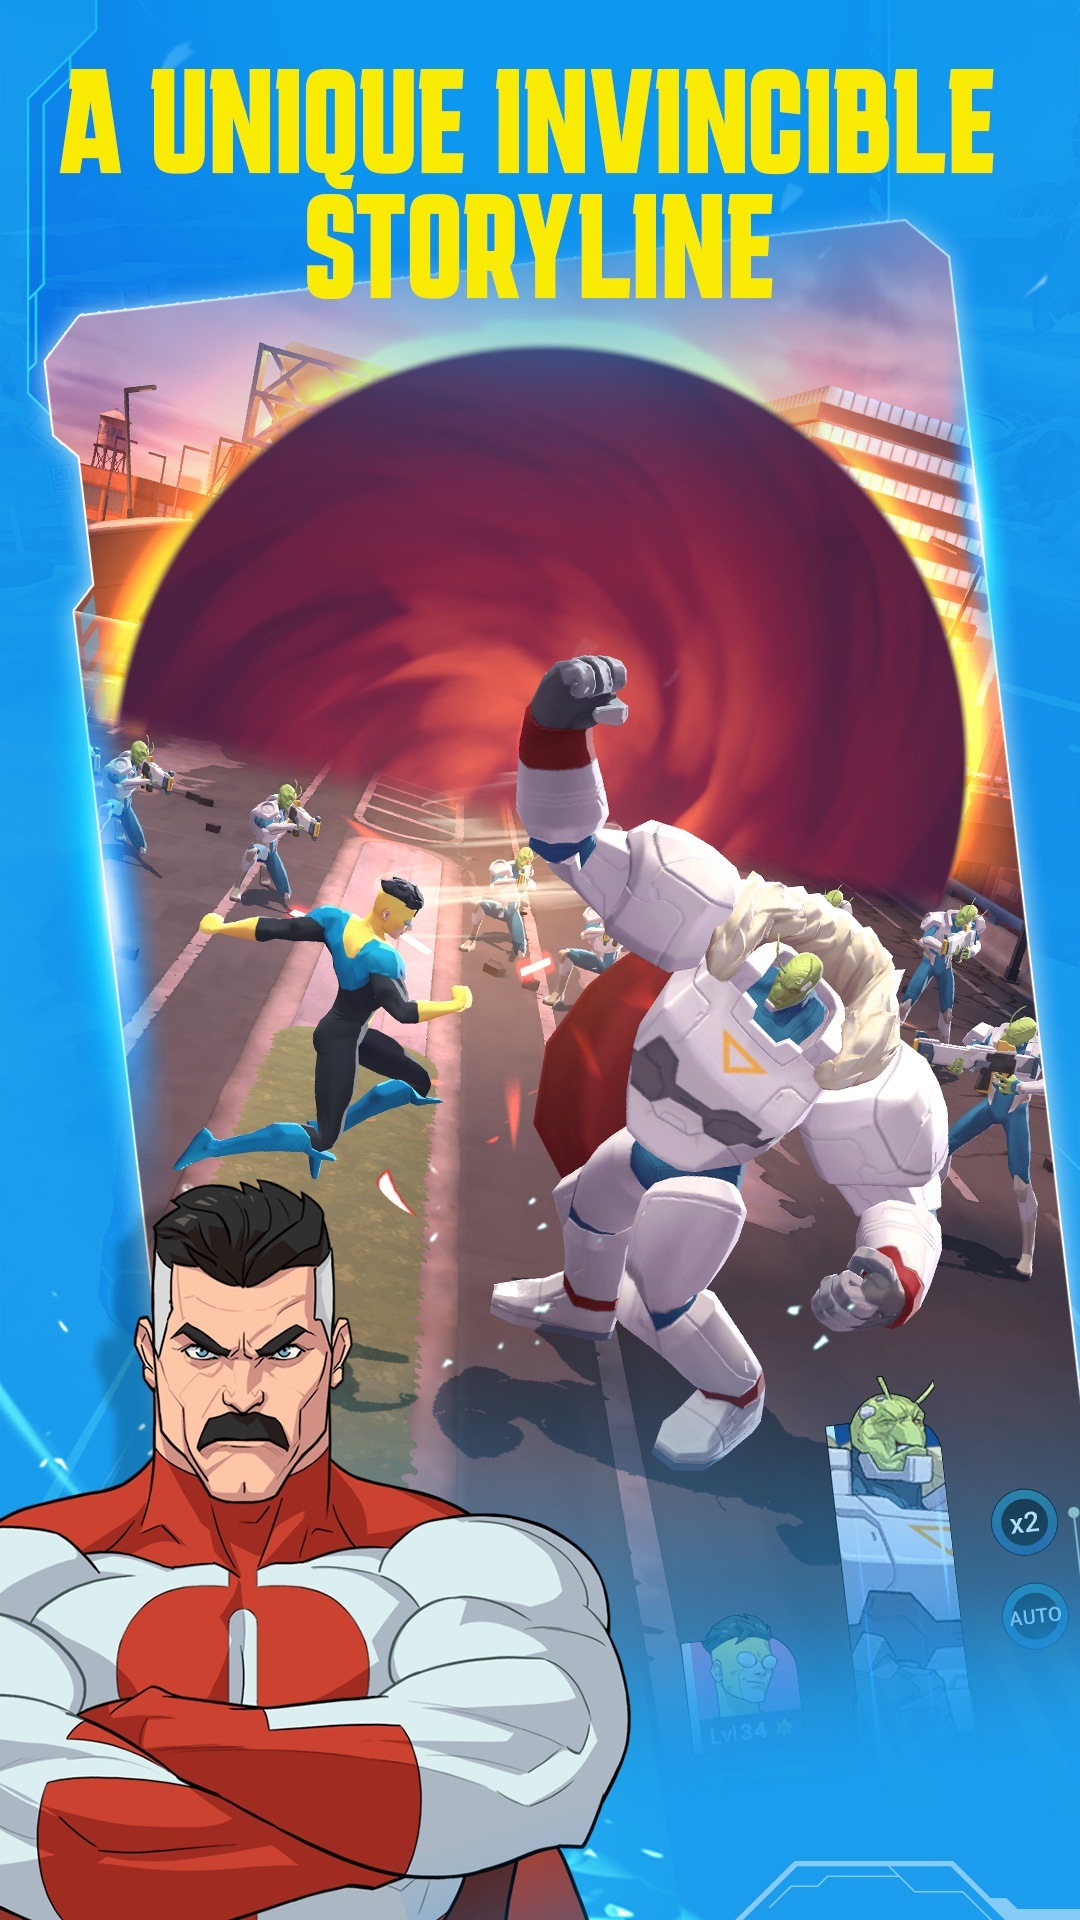 Invincible: Guarding the Globe - Game mobile siêu anh hùng đến từ Ubisoft